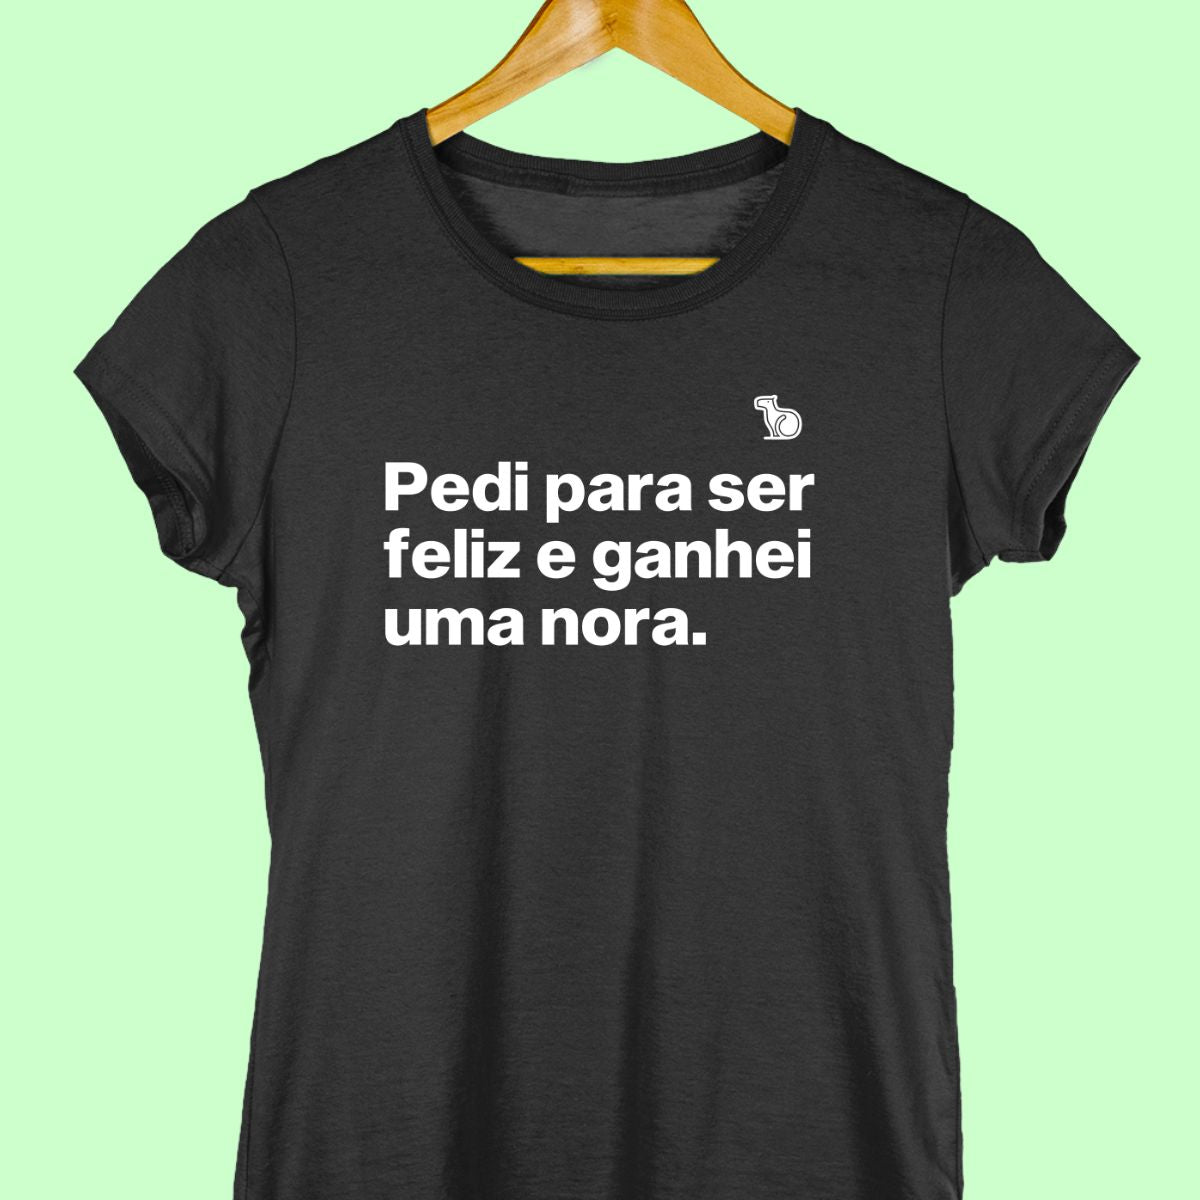 Camiseta com a frase "Pedi para ser feliz e ganhei uma nora." feminina preta.